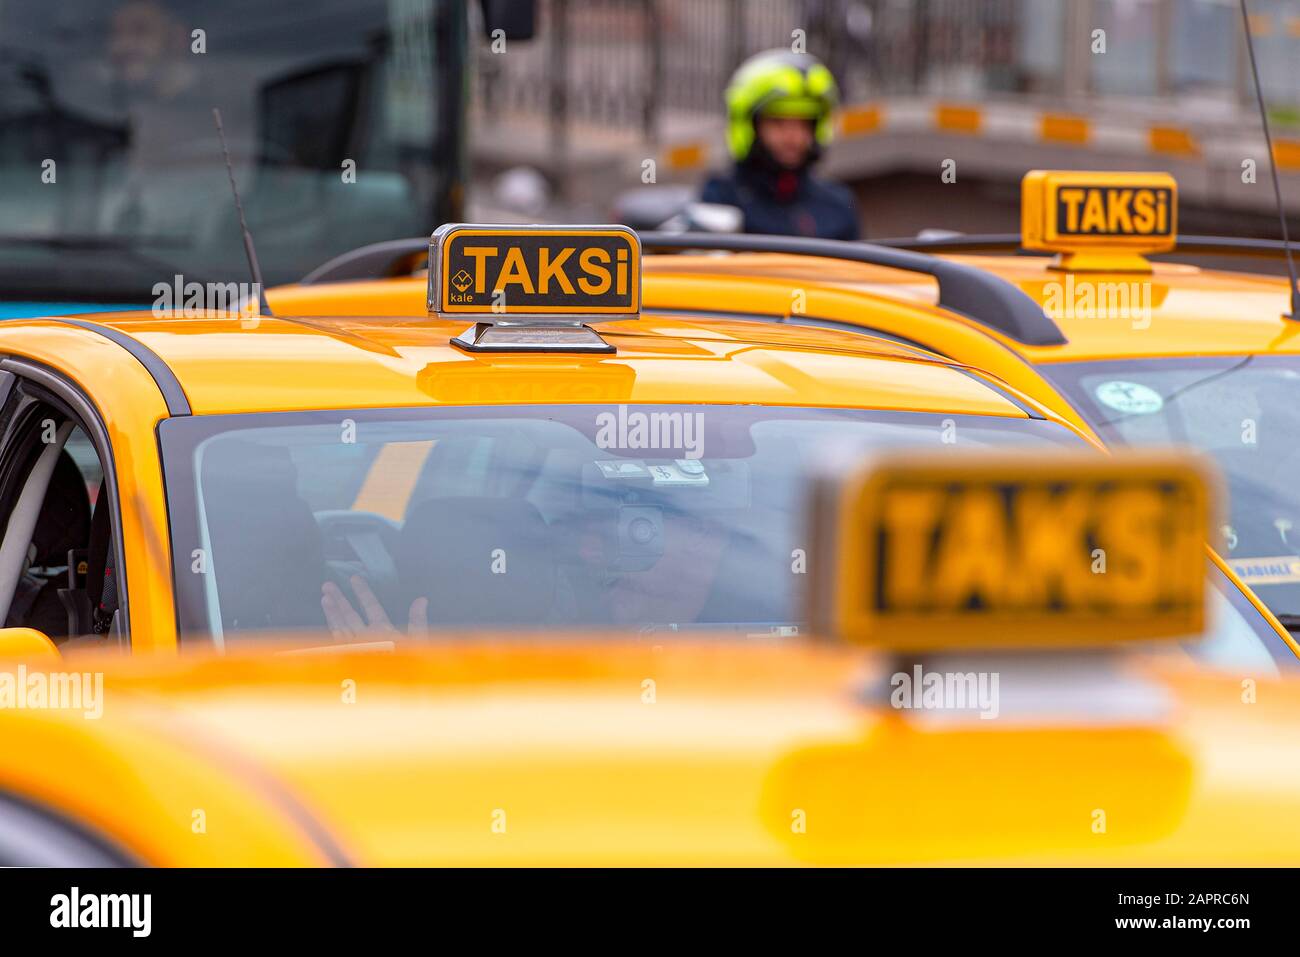 ISTANBUL - JAN 01: Yellow TAXI in Turkey, Turkish Taxi in Istanbul on January 01. 2020 in Turkey Stock Photo